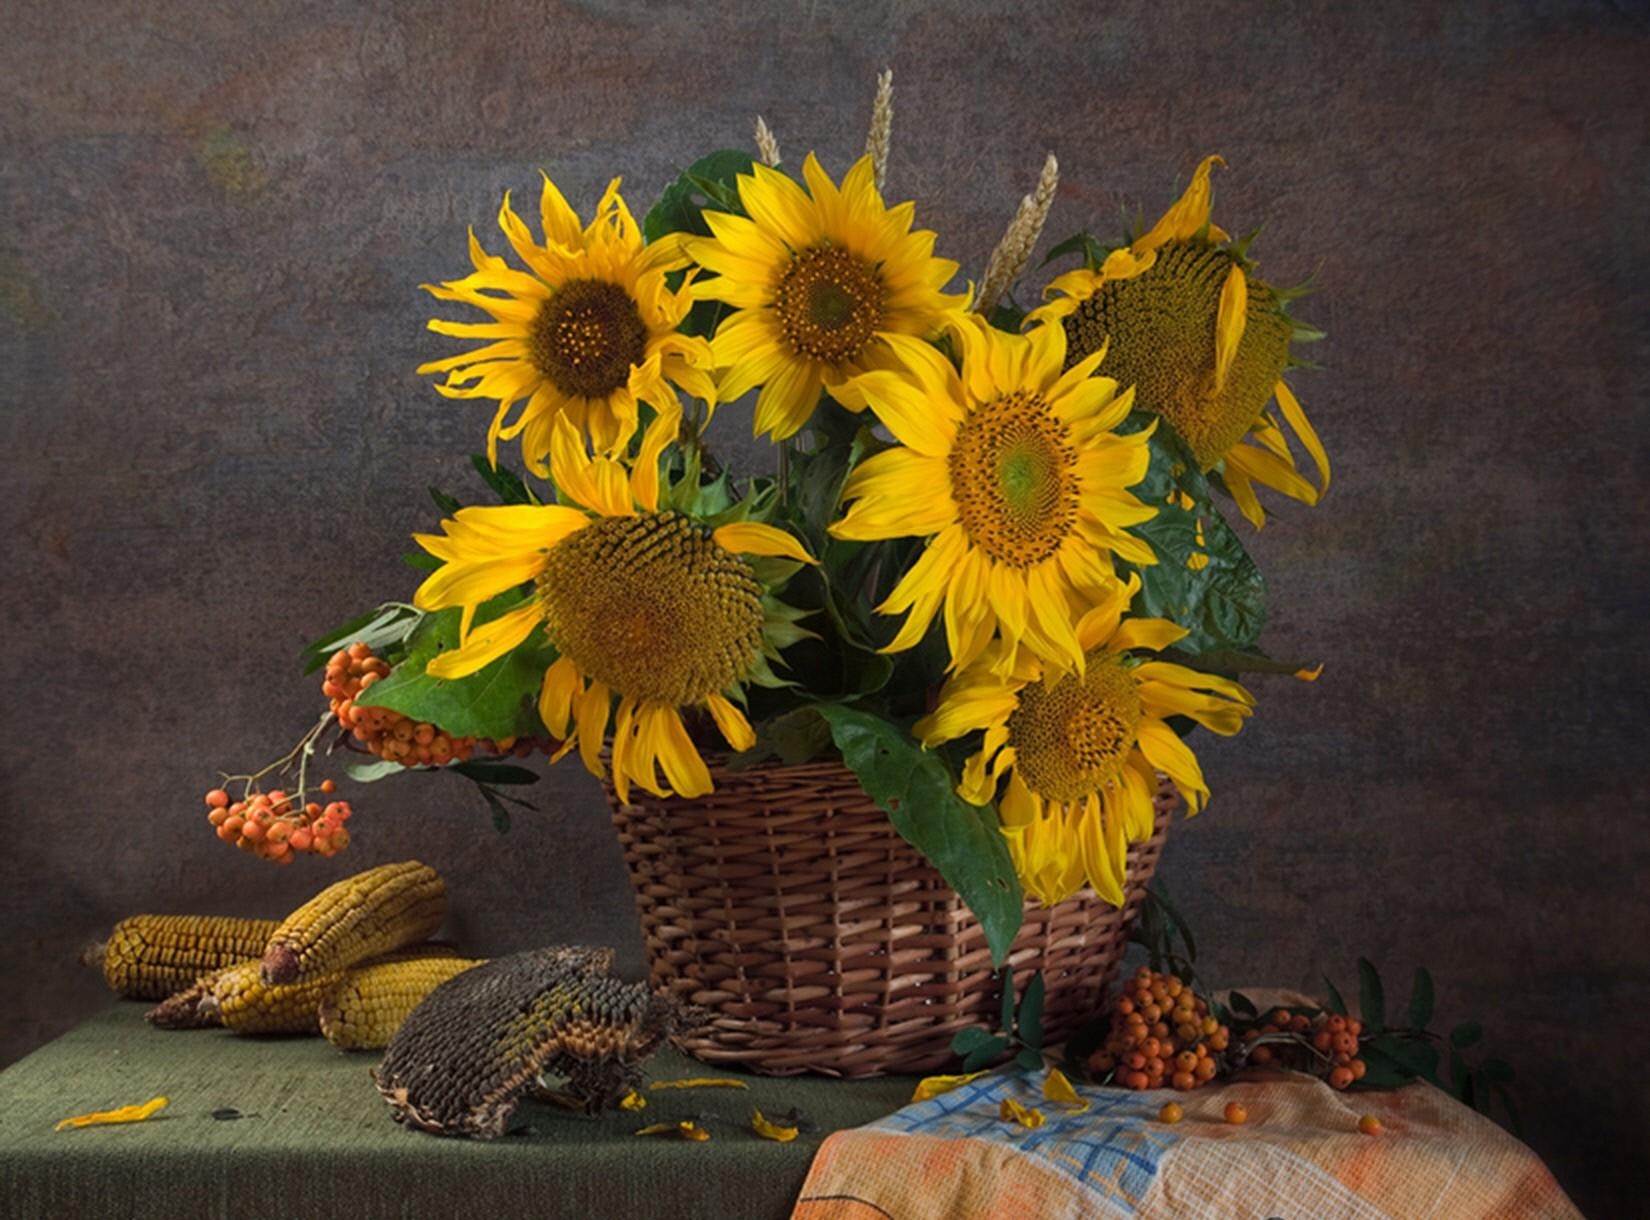 sunflowers, flowers, still life, basket, corn, rowan, seeds, sunflower seeds, maize